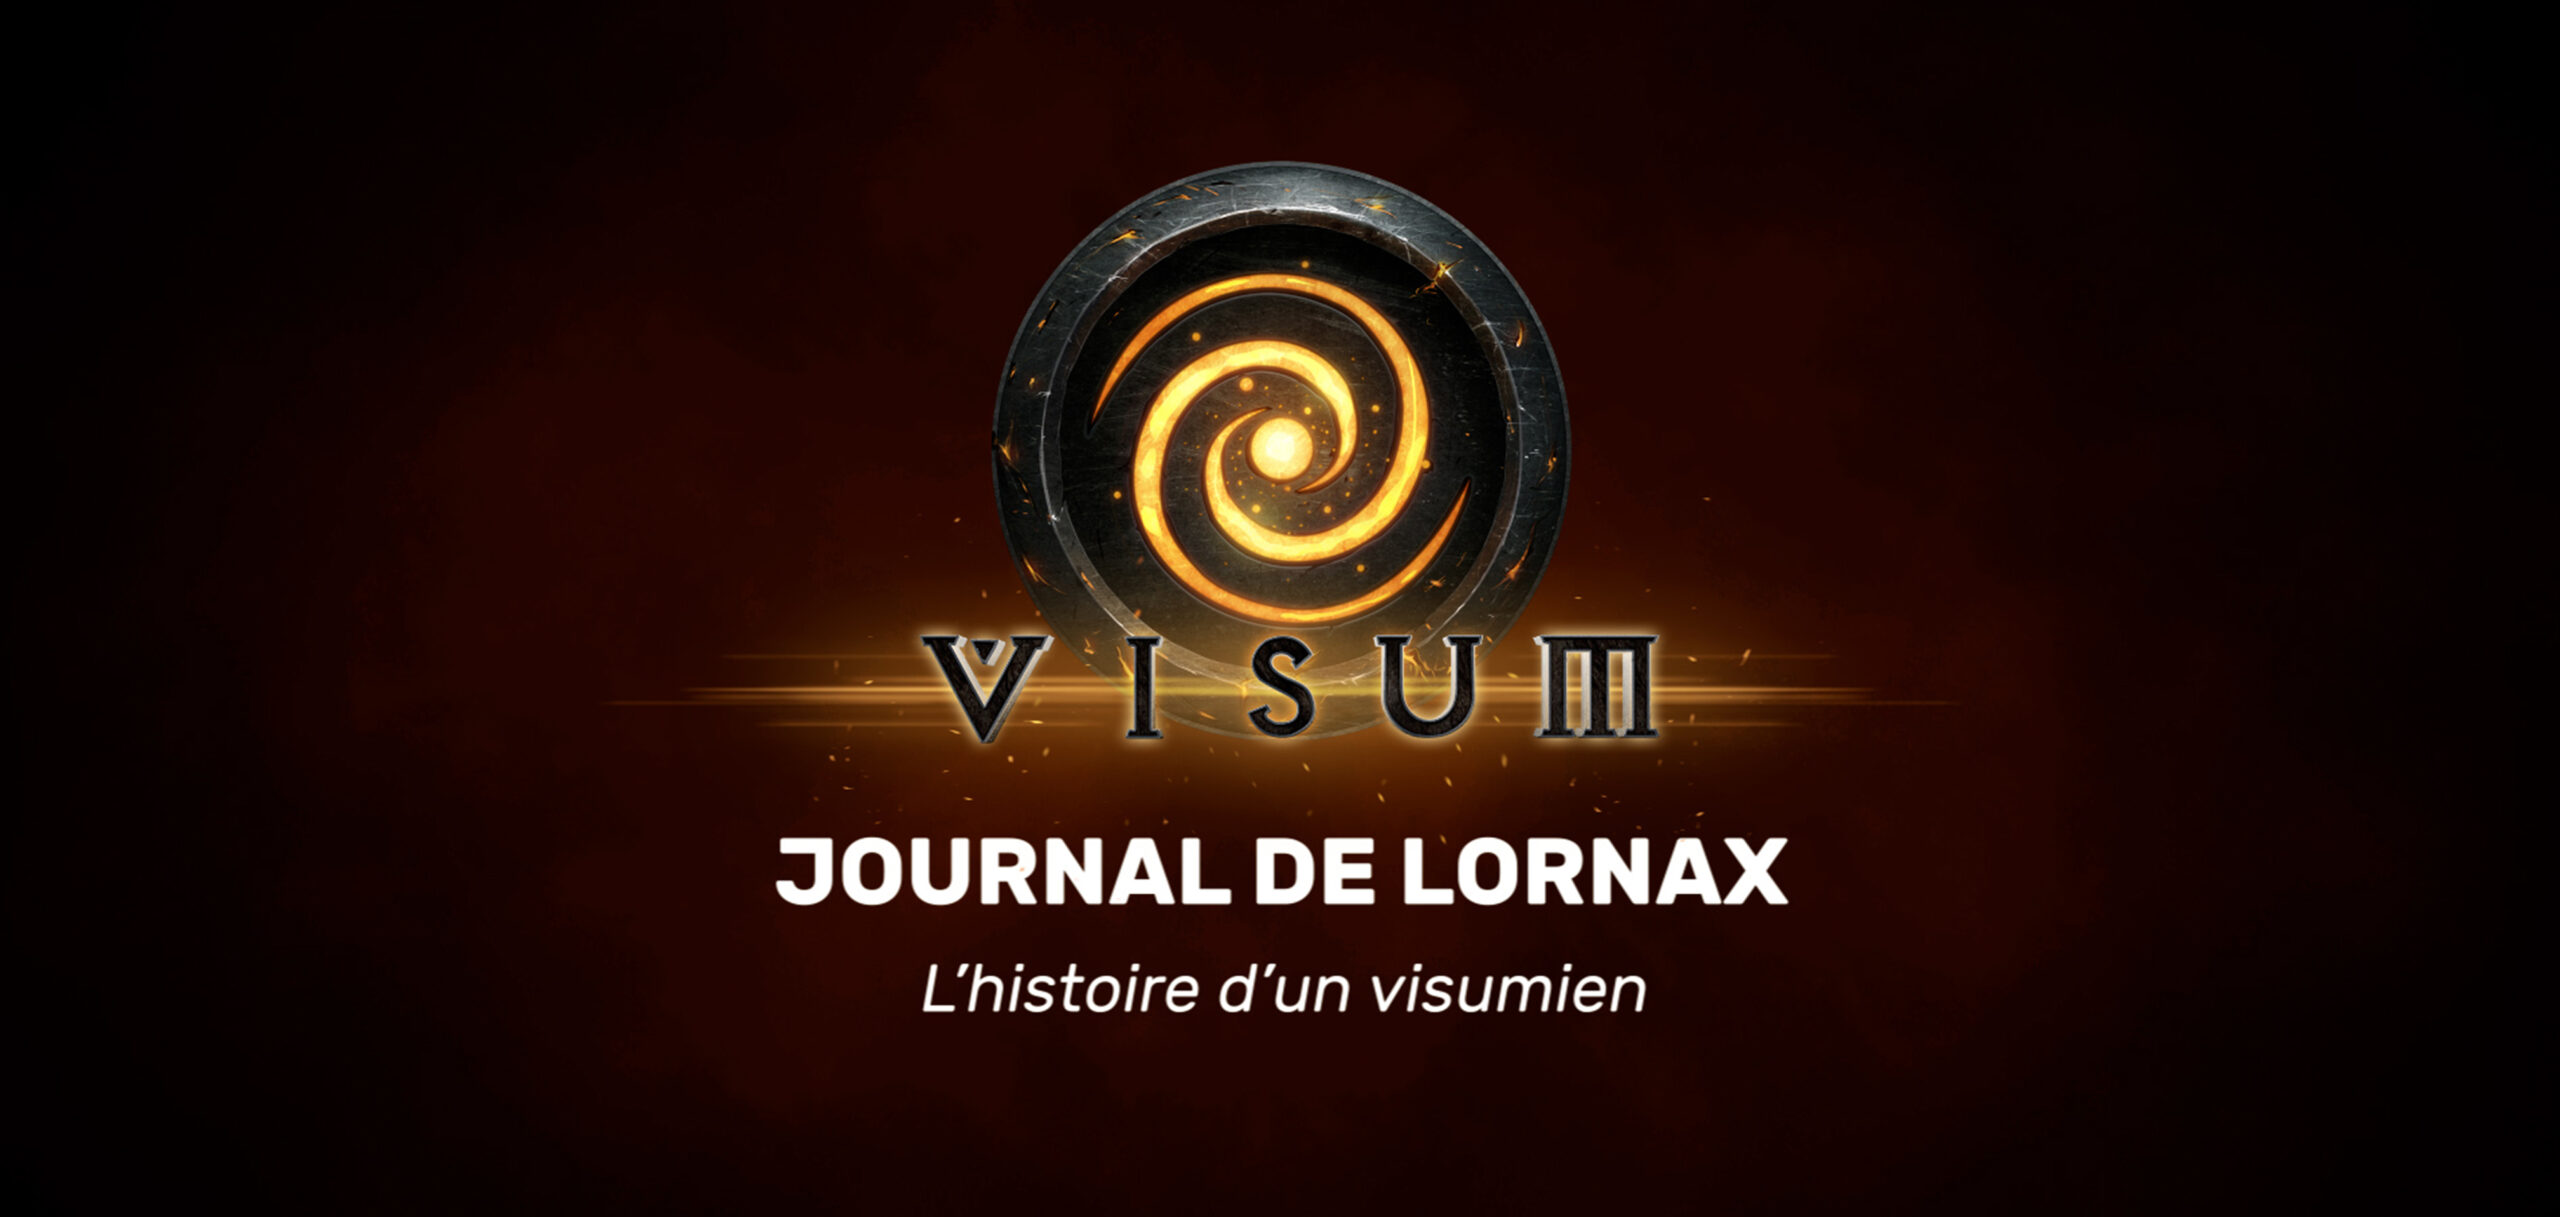 Journal de Lornax